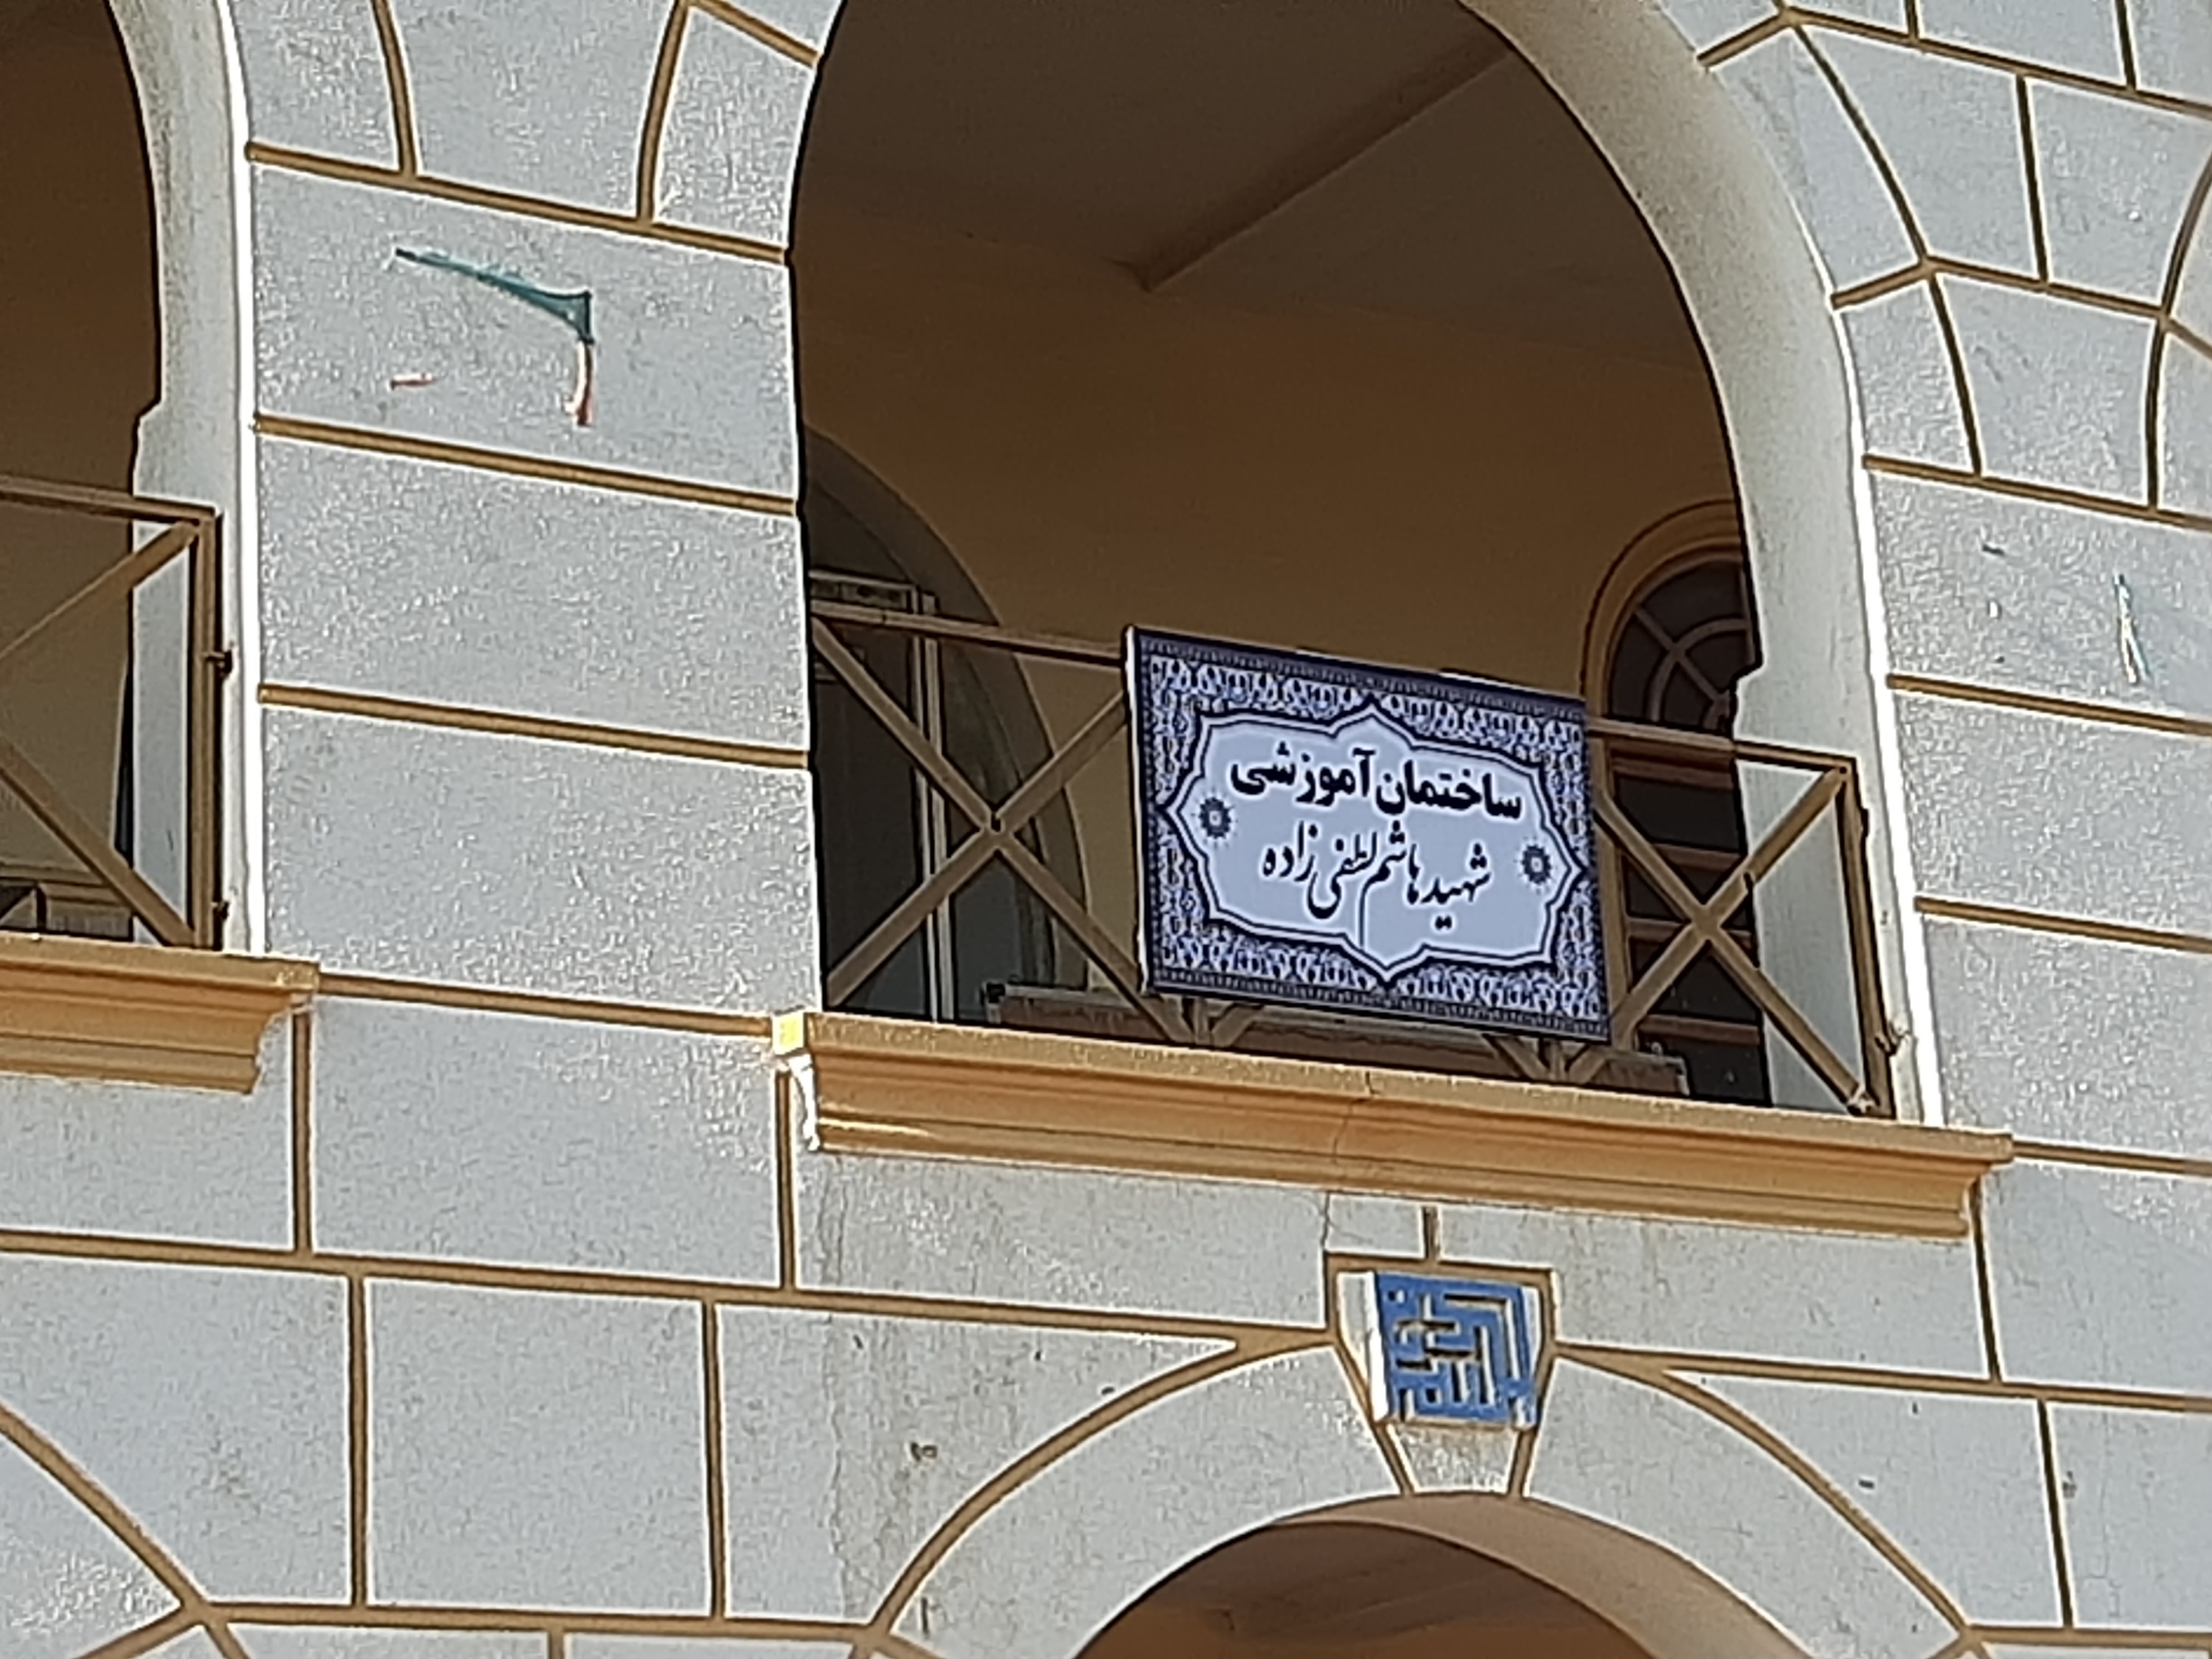 نامگذاری ساختمان دانشگاه آزاد اسلامی رودان به نام شهدا